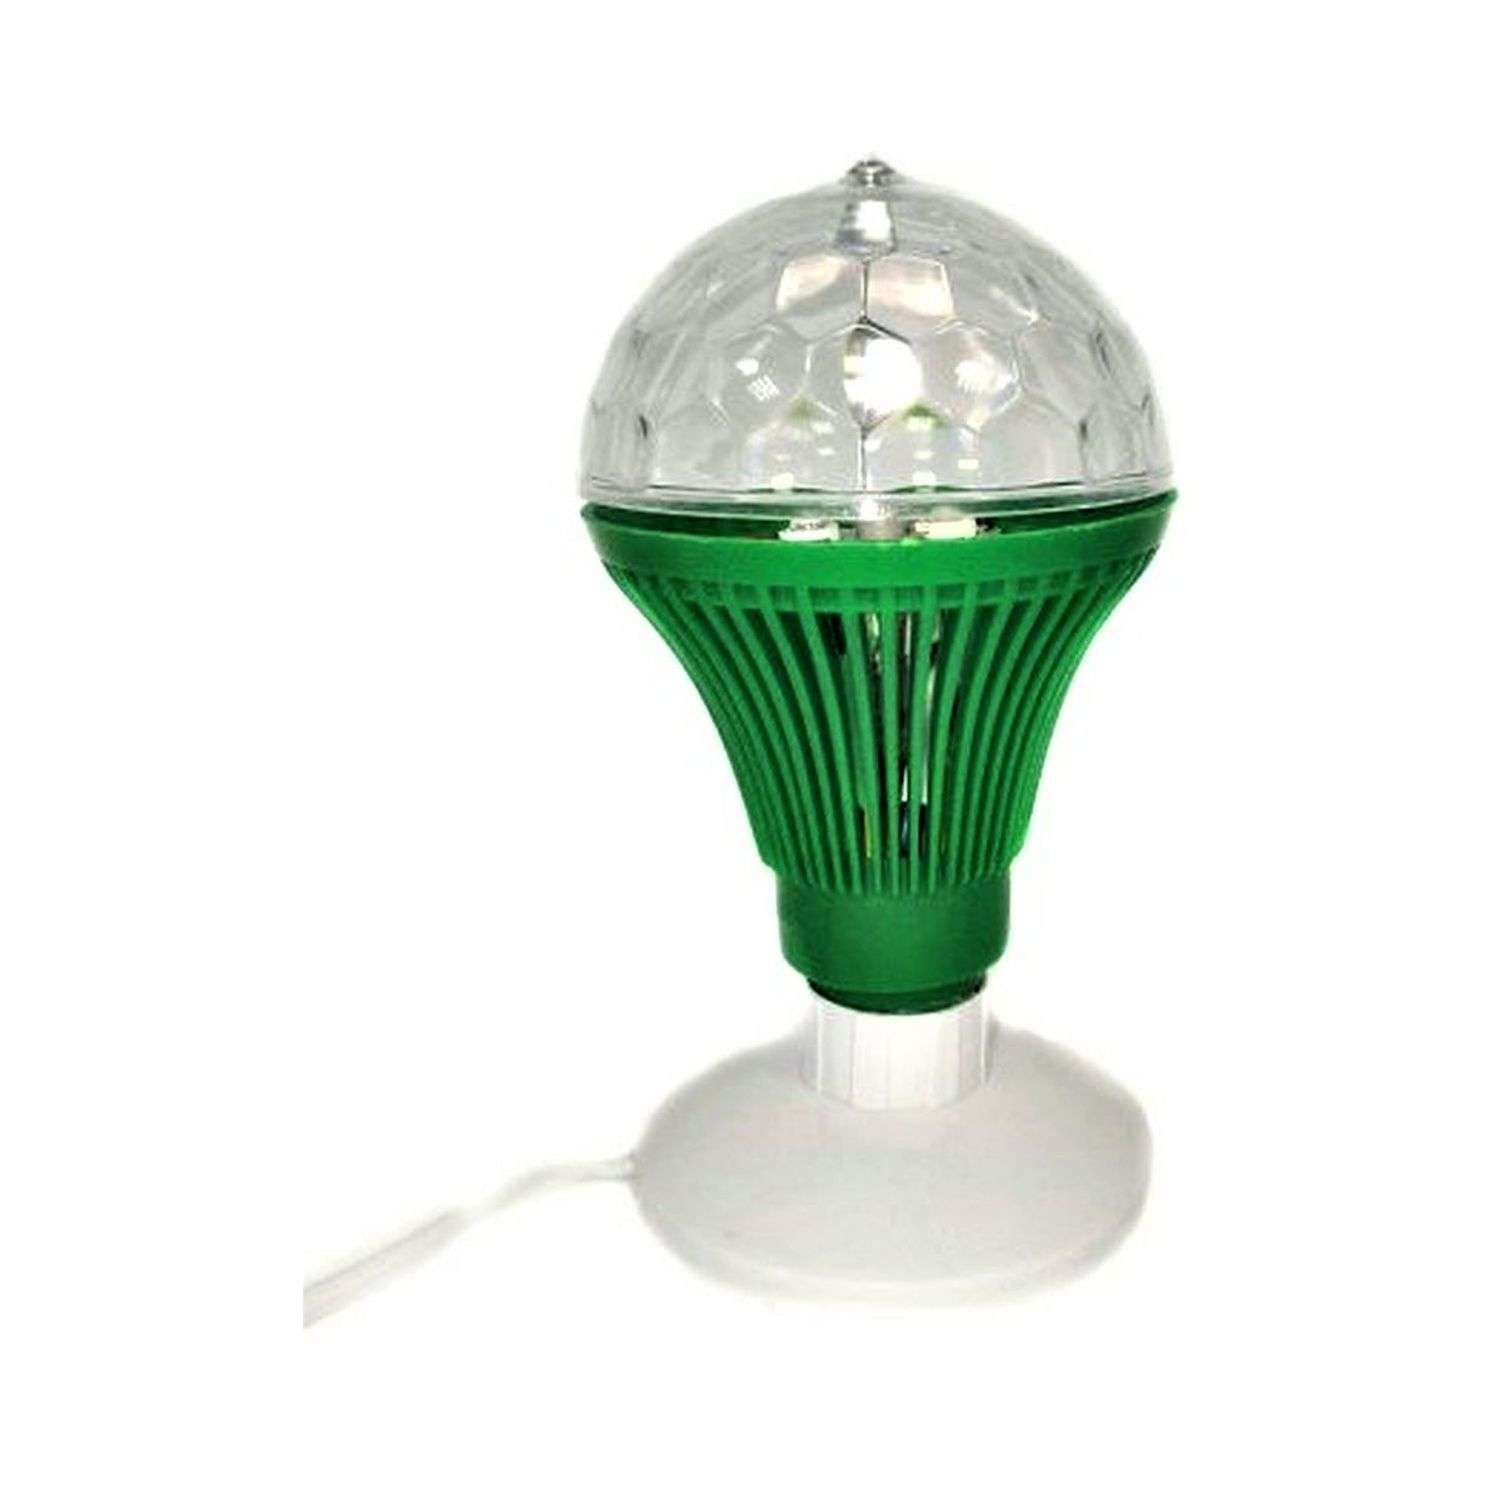 Светильник Uniglodis Светодиодный шар на подставке зеленый - фото 1